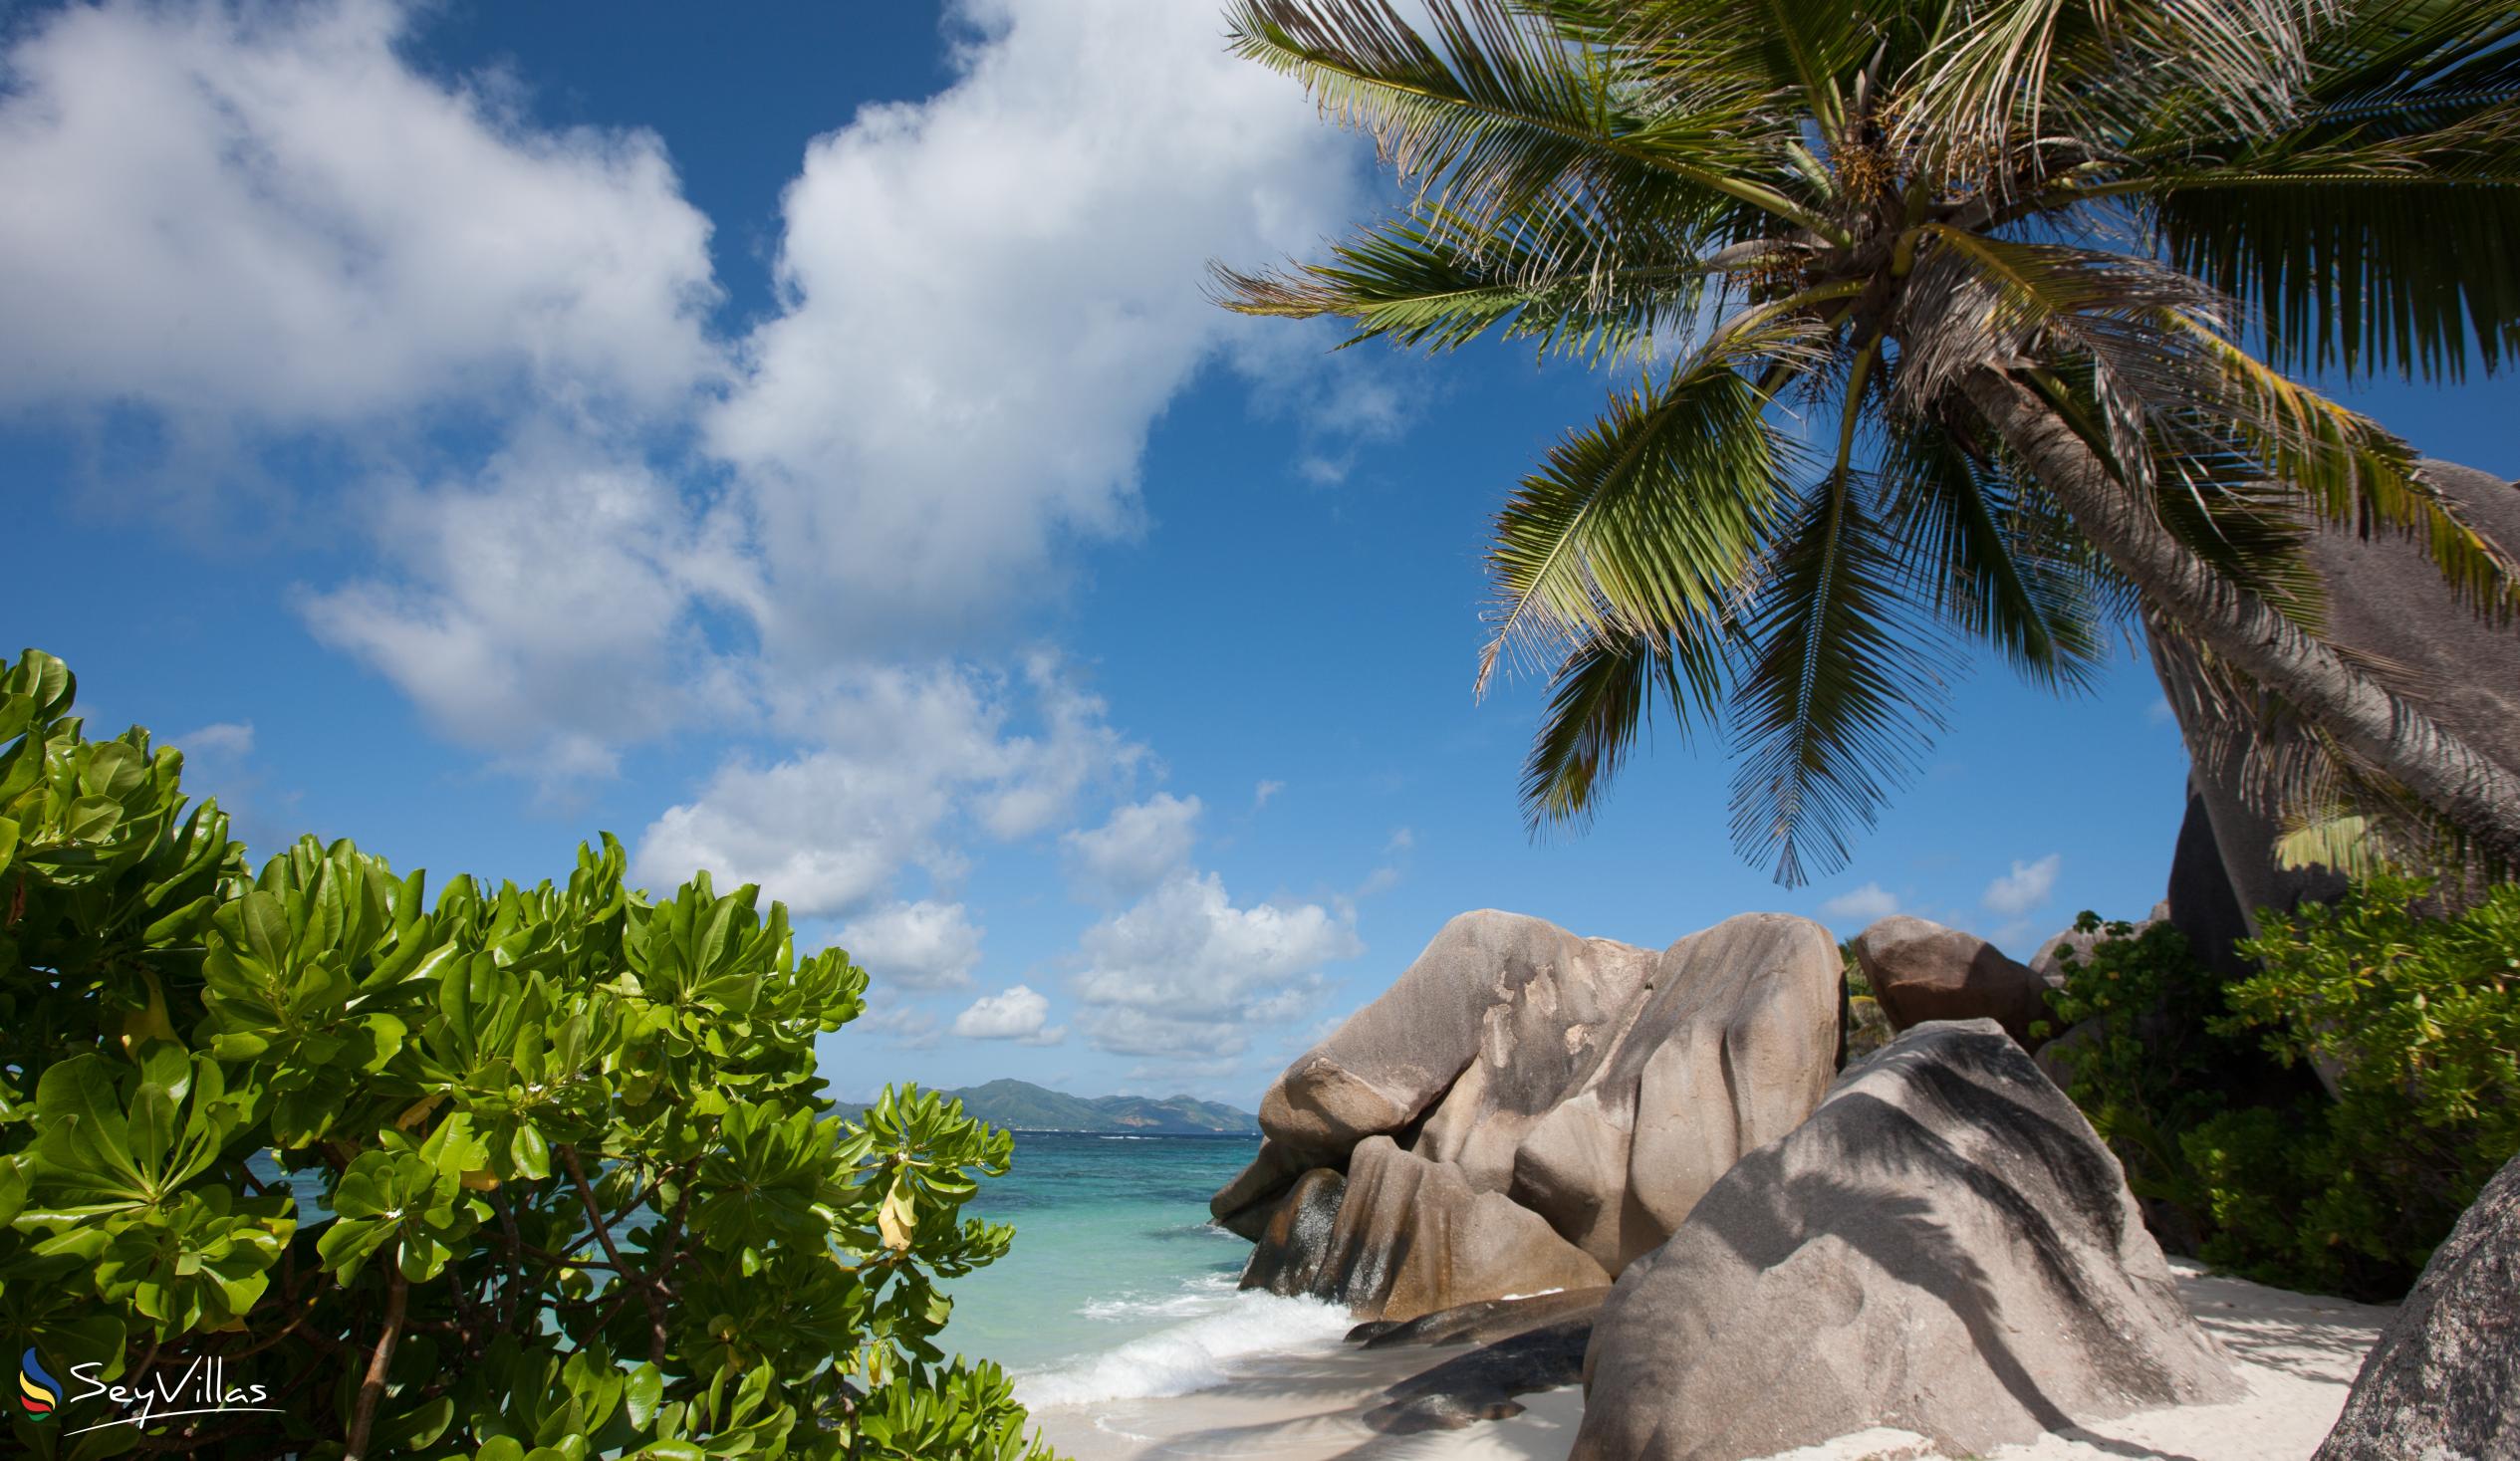 Photo 46: Pension Fidele - Beaches - La Digue (Seychelles)